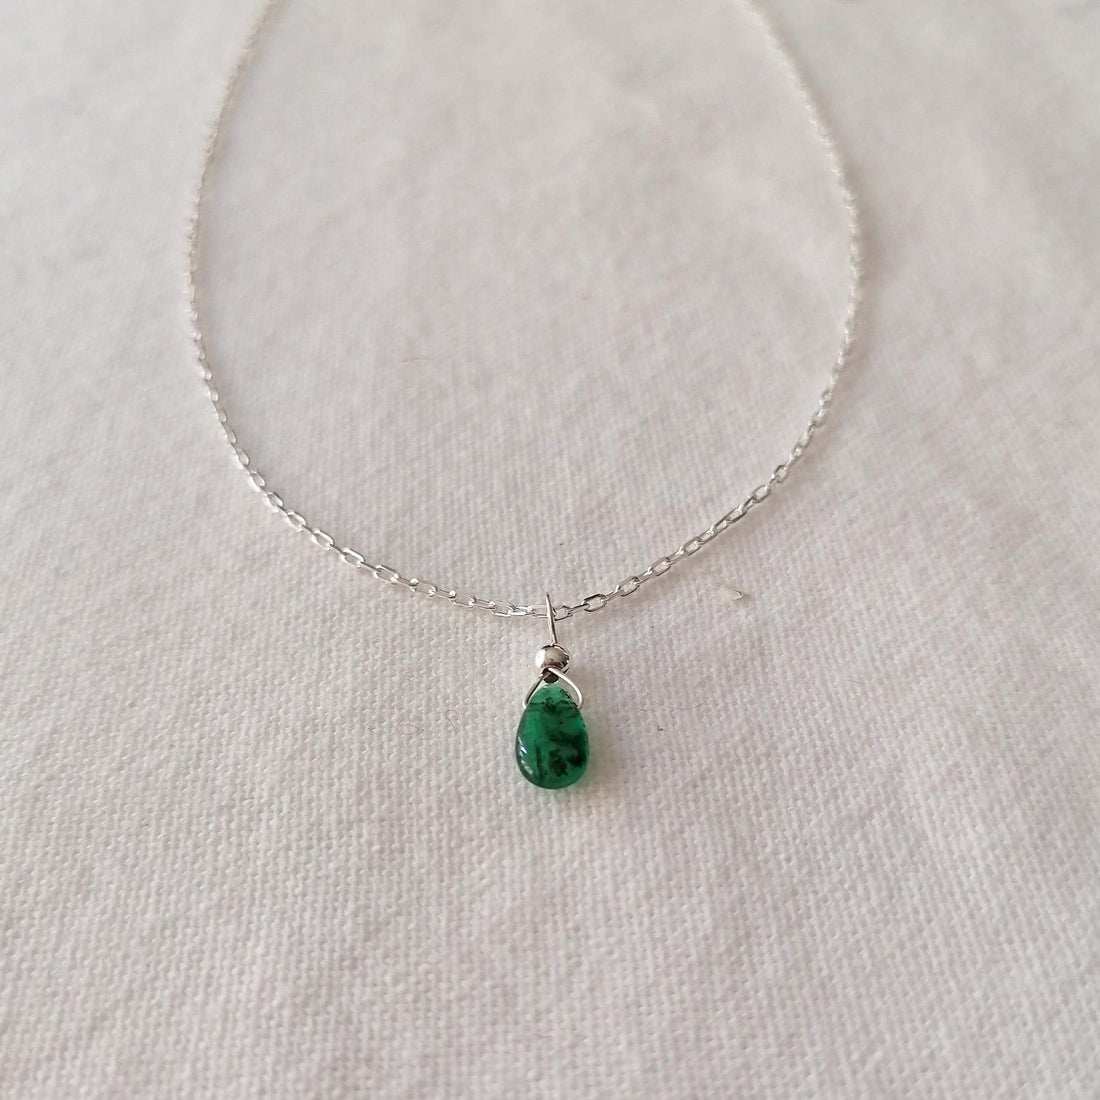 Emerald Isla Pendant in Silver Necklaces Sayulita Sol 18 inch Sterling Silver Chain +$25 